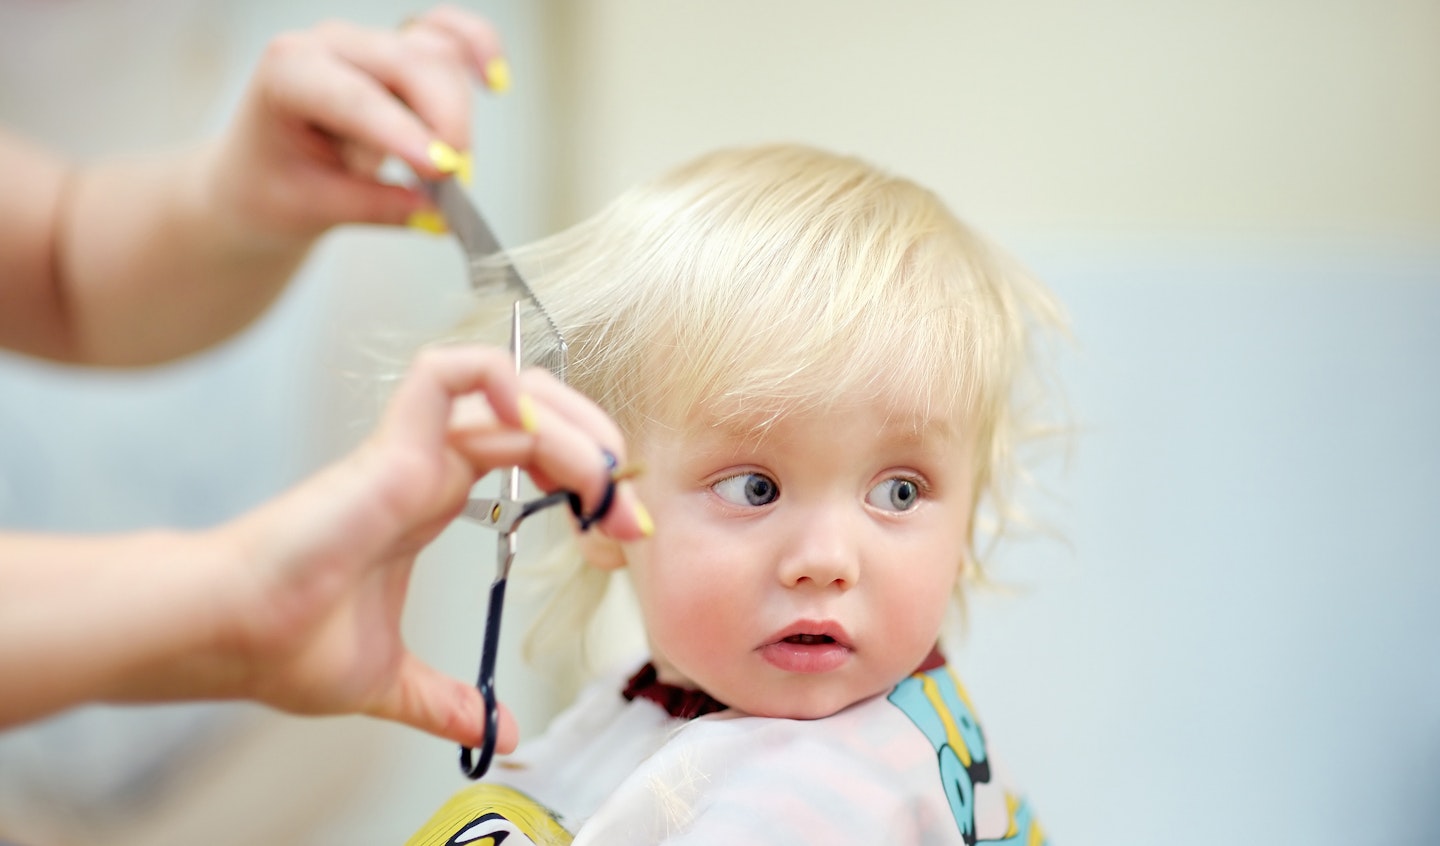 Toddler haircuts: At home or at the salon